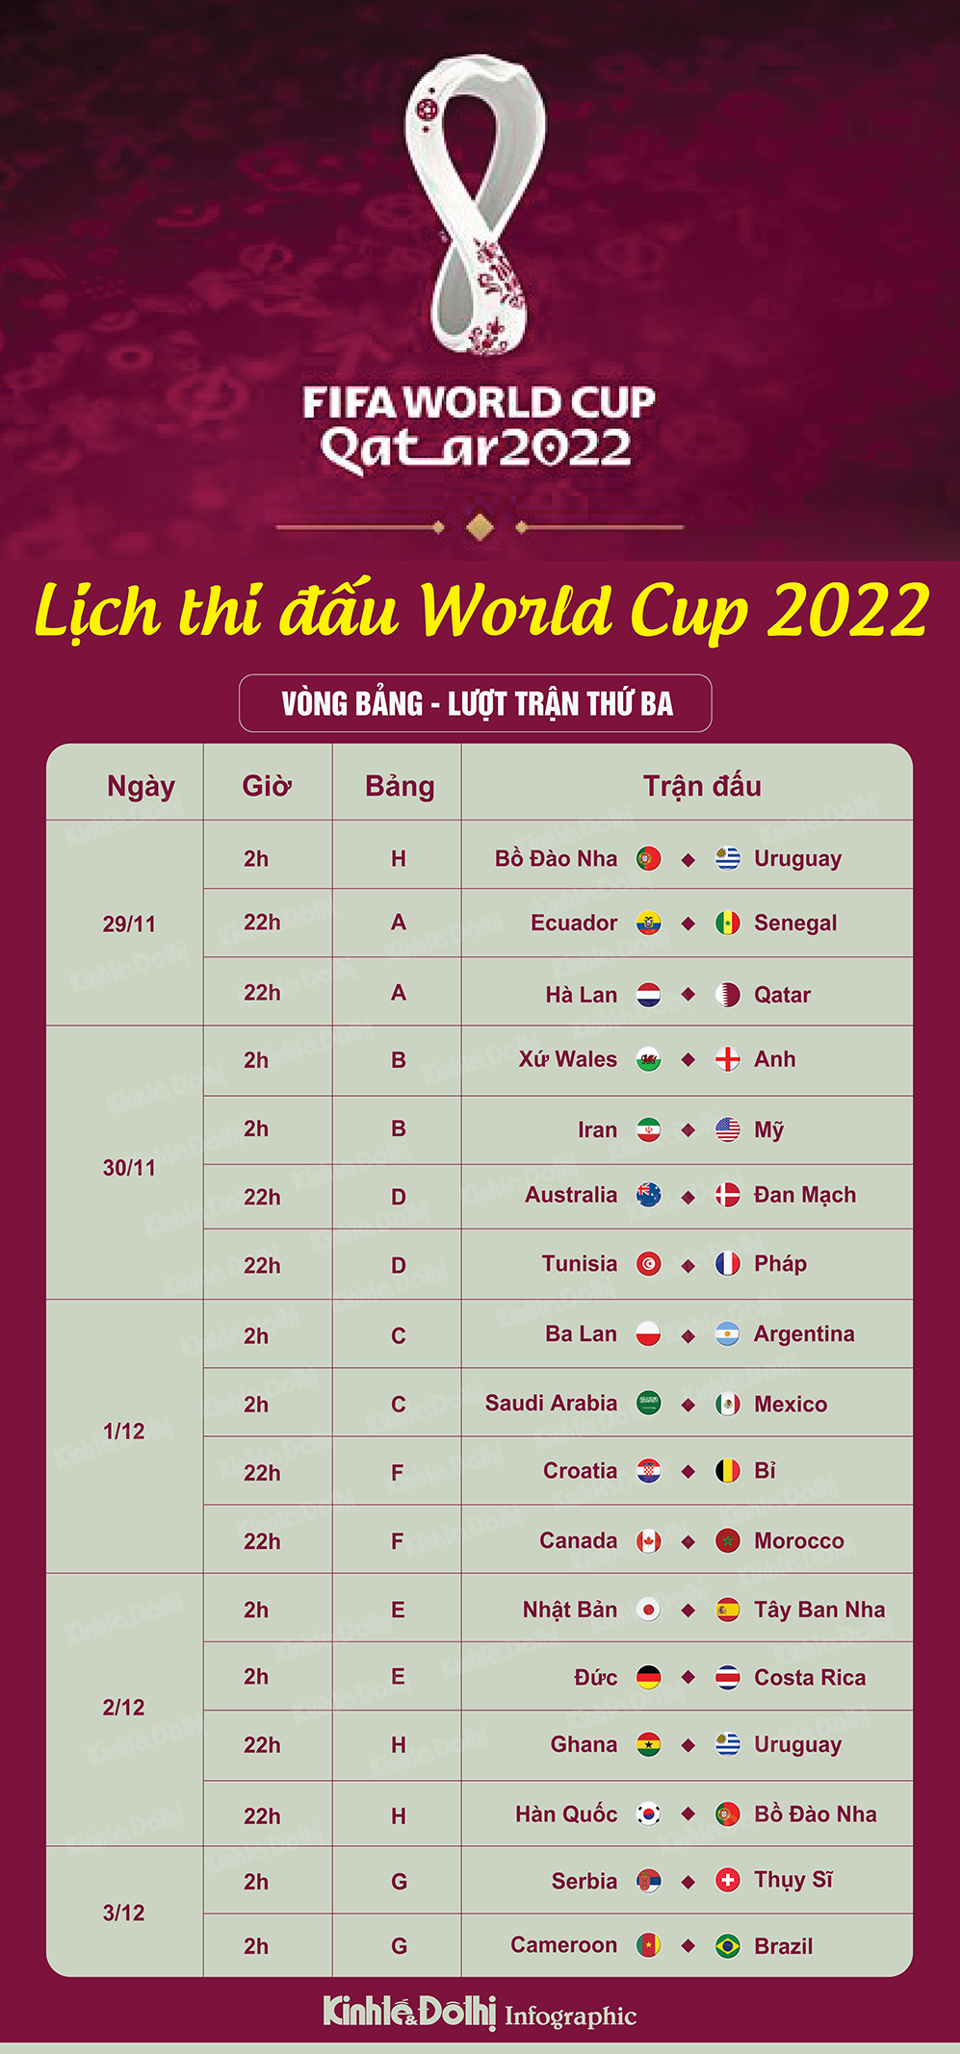 Lịch thi đấu World Cup ngày 2/12: Cơ hội nào cho tuyển Hàn Quốc? - Ảnh 1